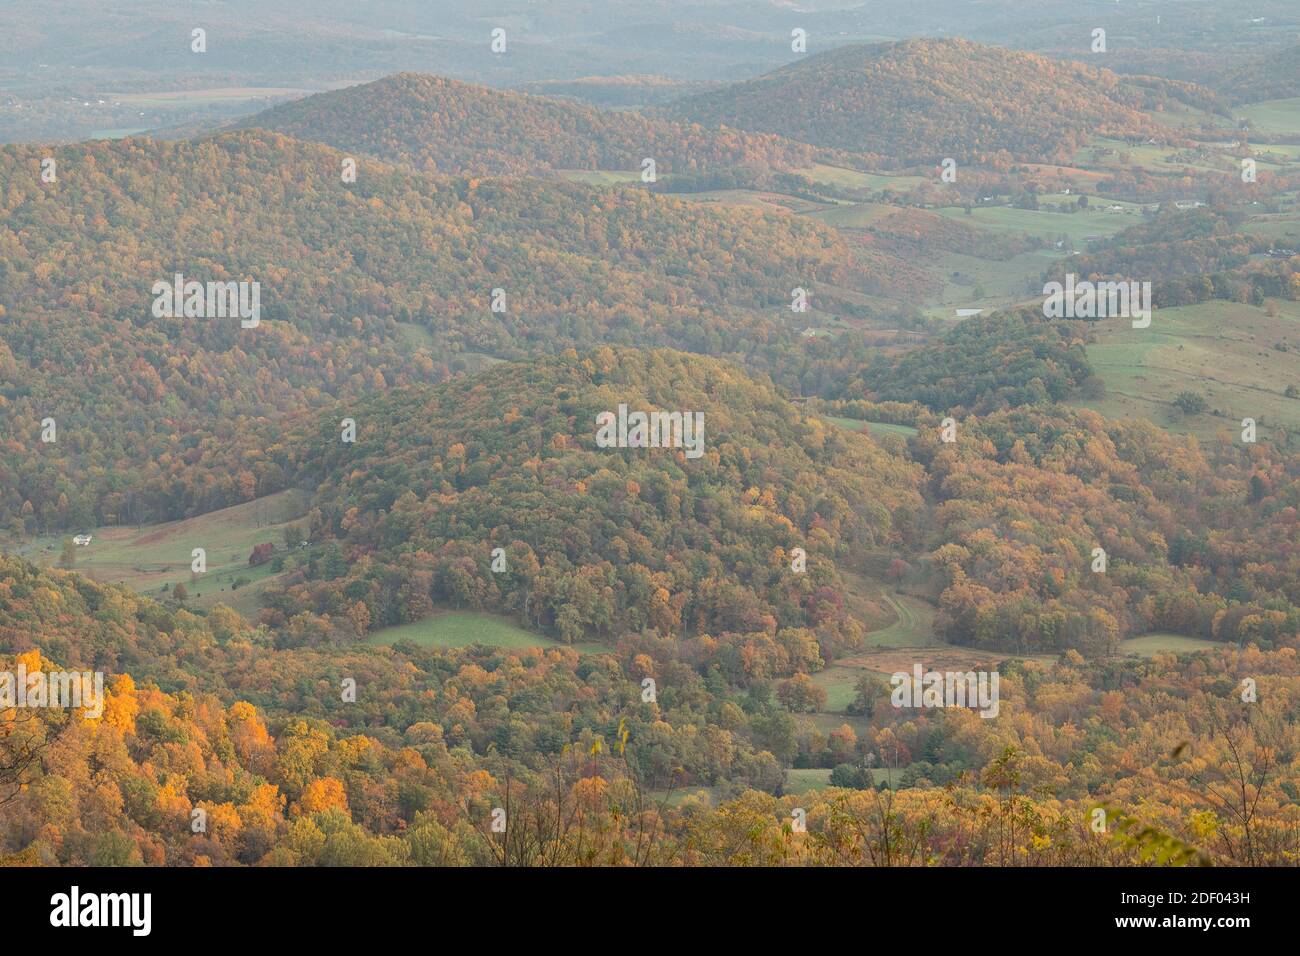 Le feuillage d'automne couvre les forêts du parc national de Shenandoah et de la vallée de Shenandoah en Virginie. Banque D'Images